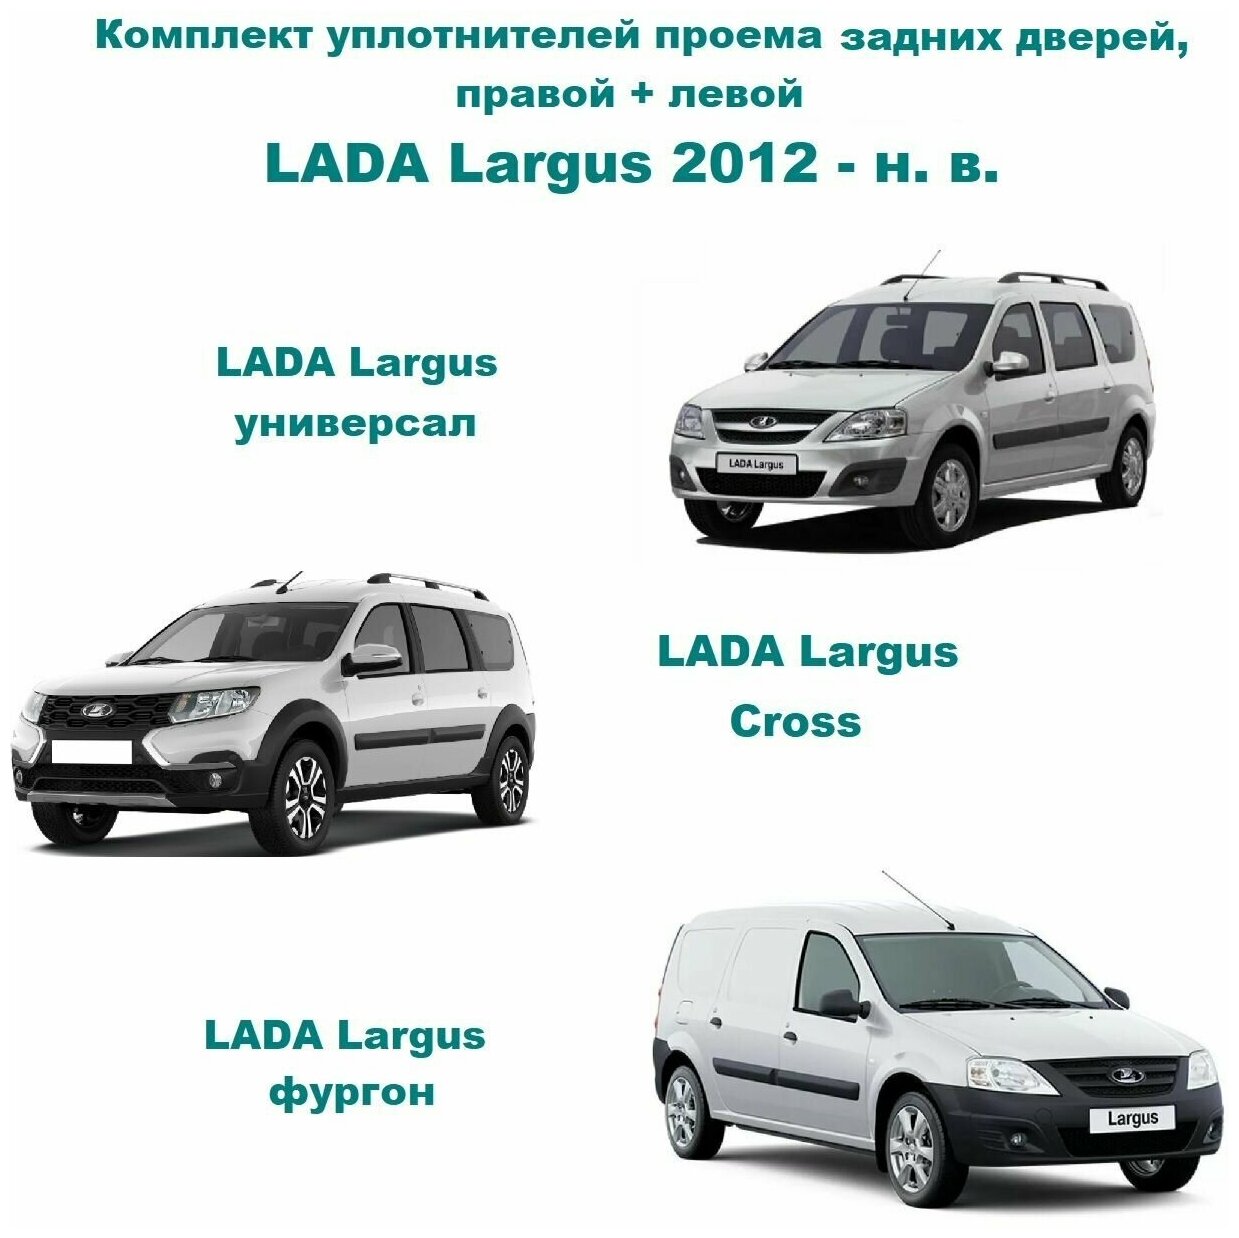 Комплект уплотнителей проема задних дверей Лада Ларгус 2012-н. в, LADA Largus (6001549465 уплотнитель на заднюю правую и левую пассажирскую дверь)